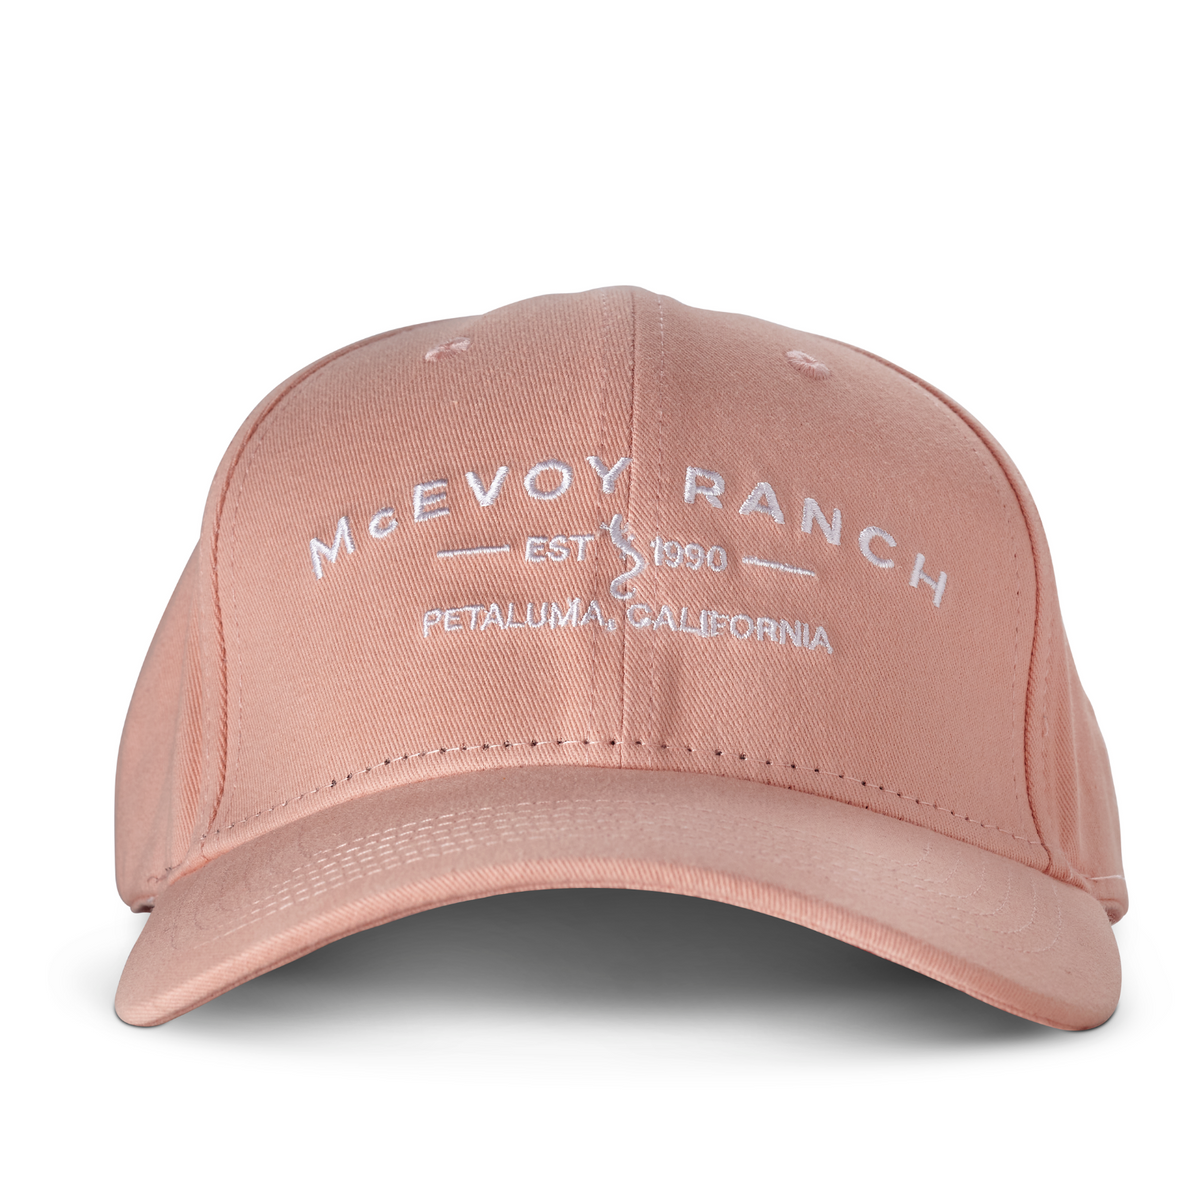 McEvoy Ranch Baseball Cap